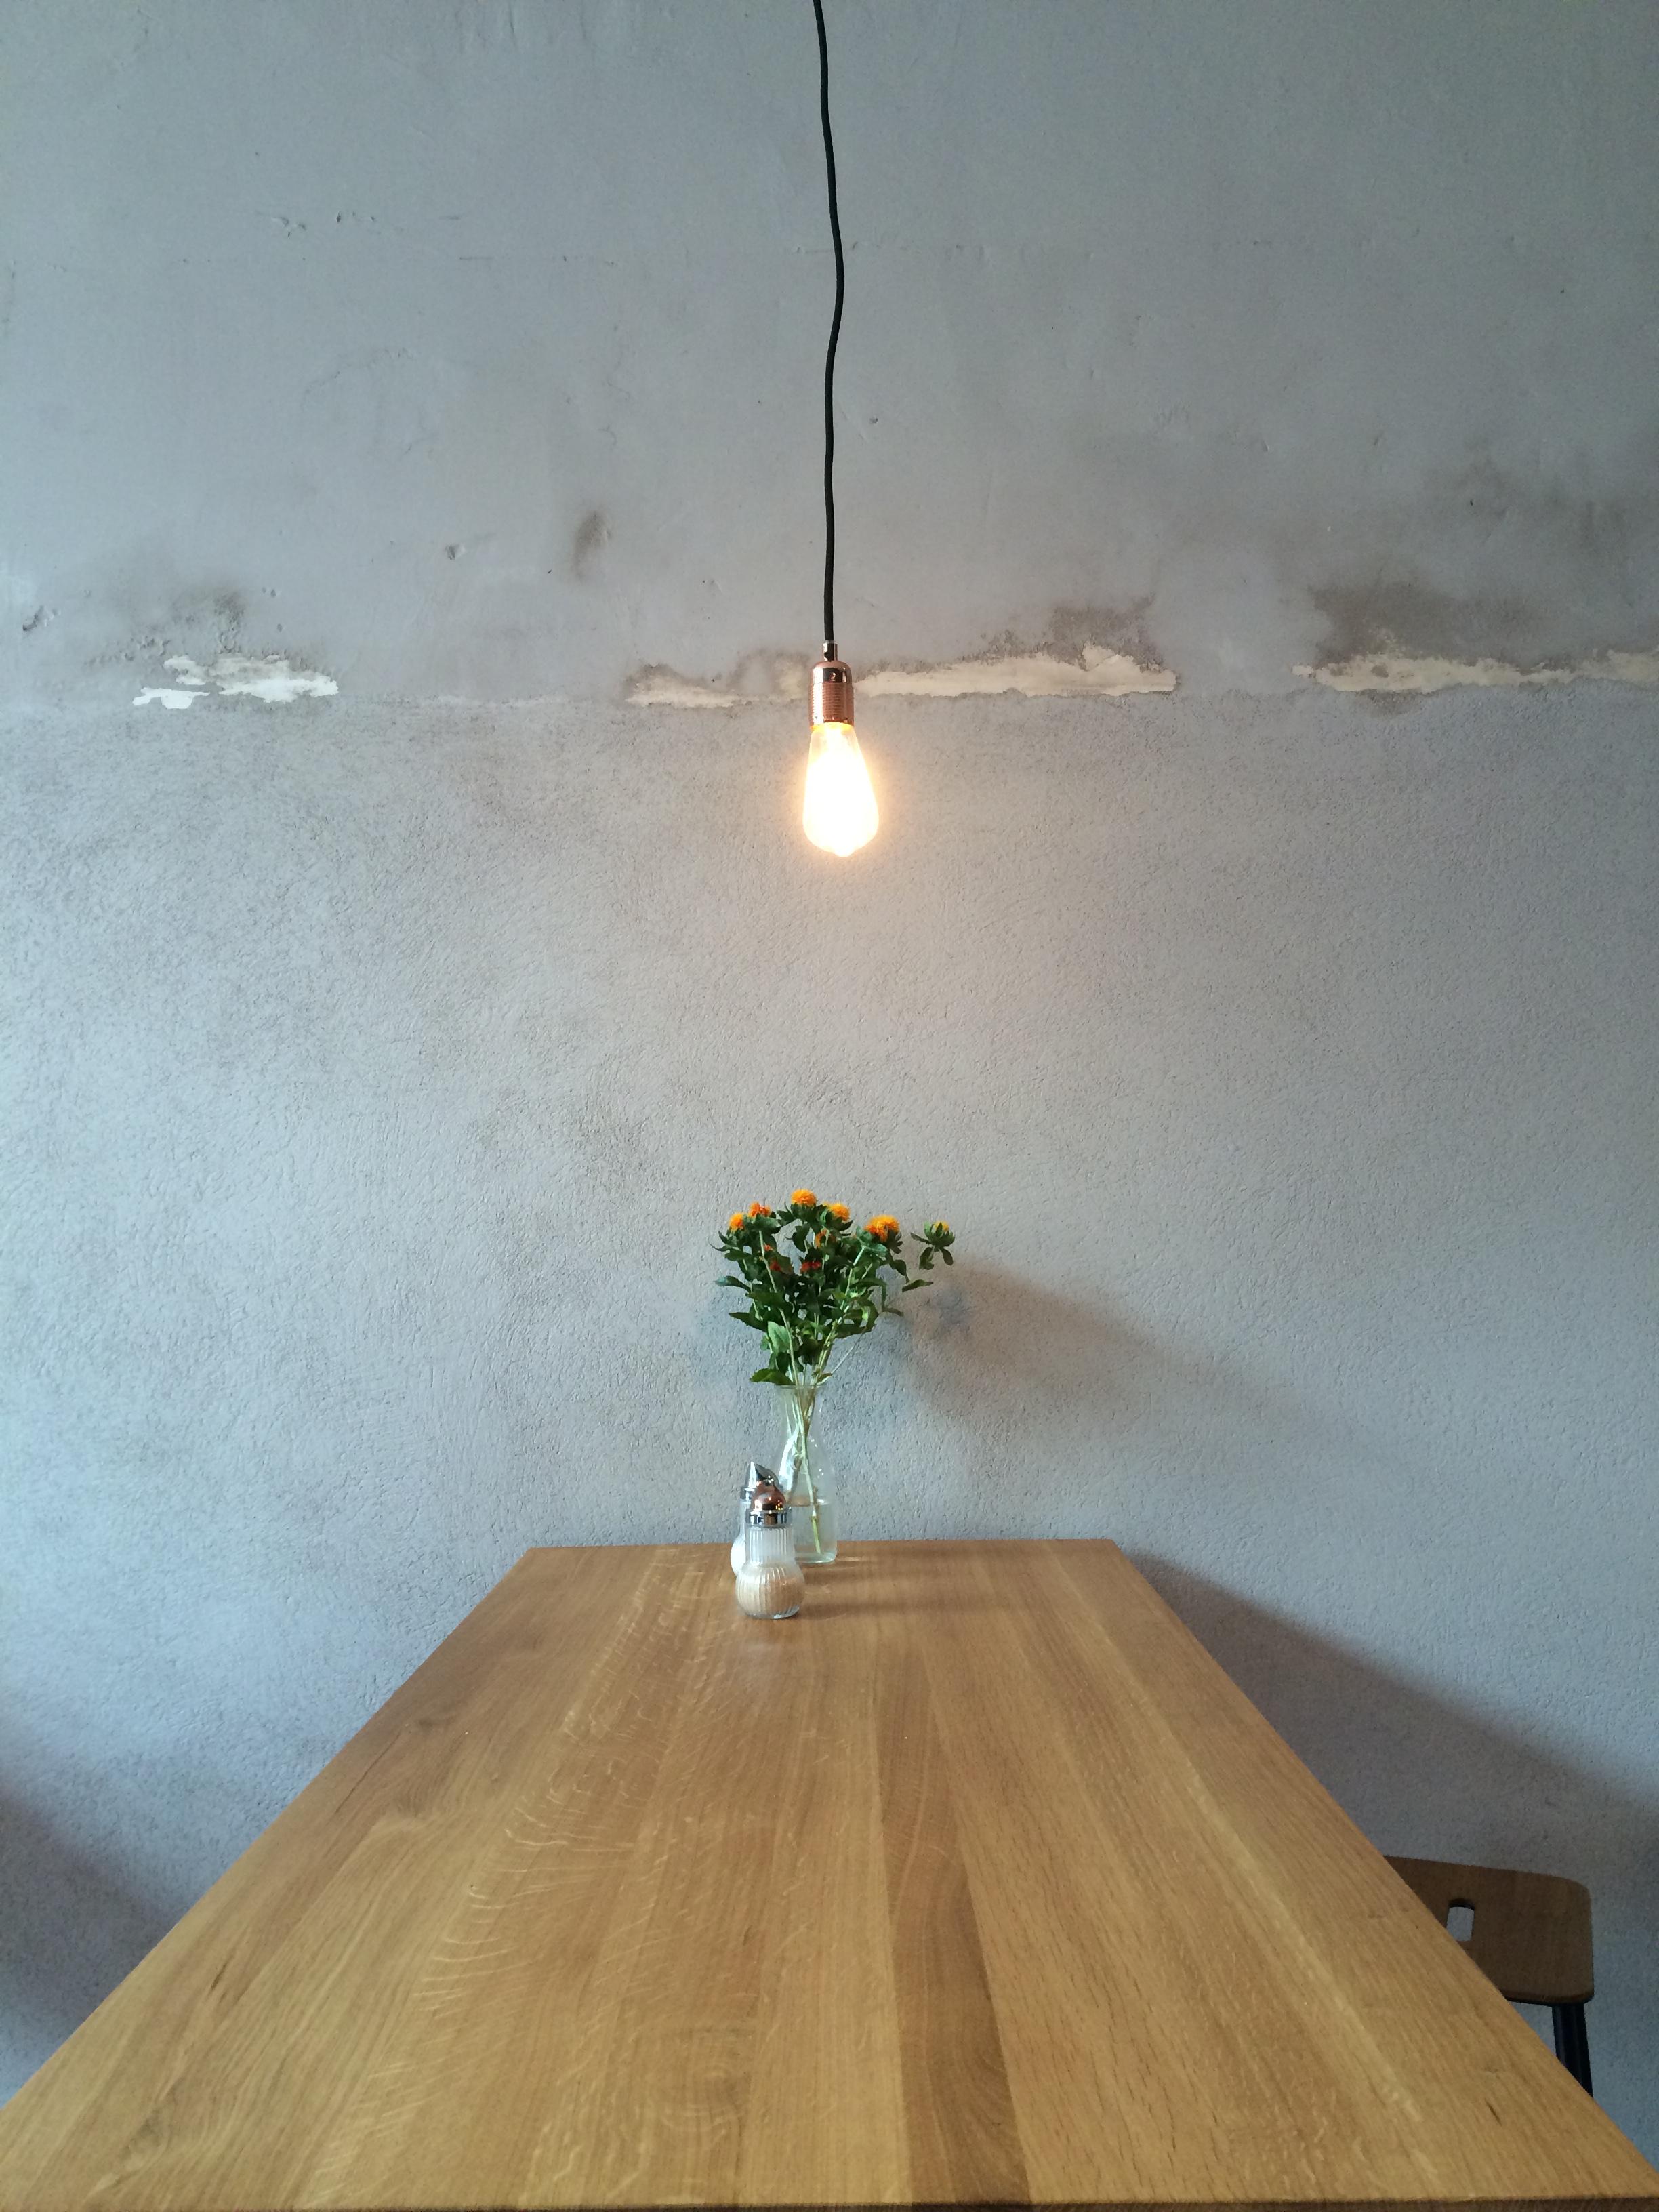 #upcyclinglampe im Café. Schlicht aber wirkungsvoll. #glühbirne #betonwand #beton #holztisch #upcycling